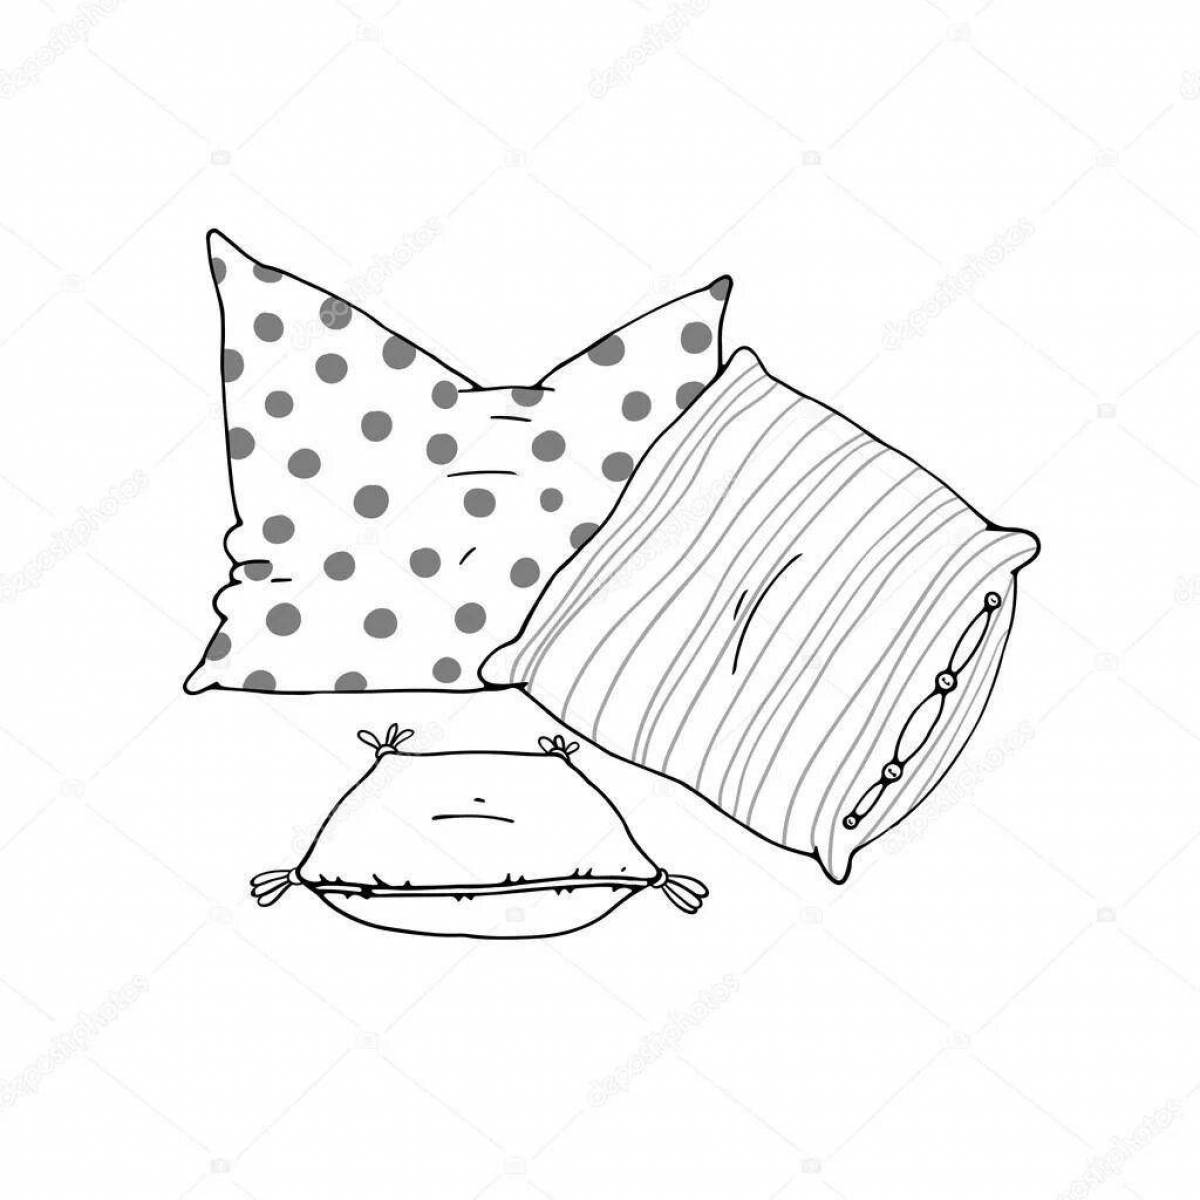 Одеяло и подушка snuggly coloring page